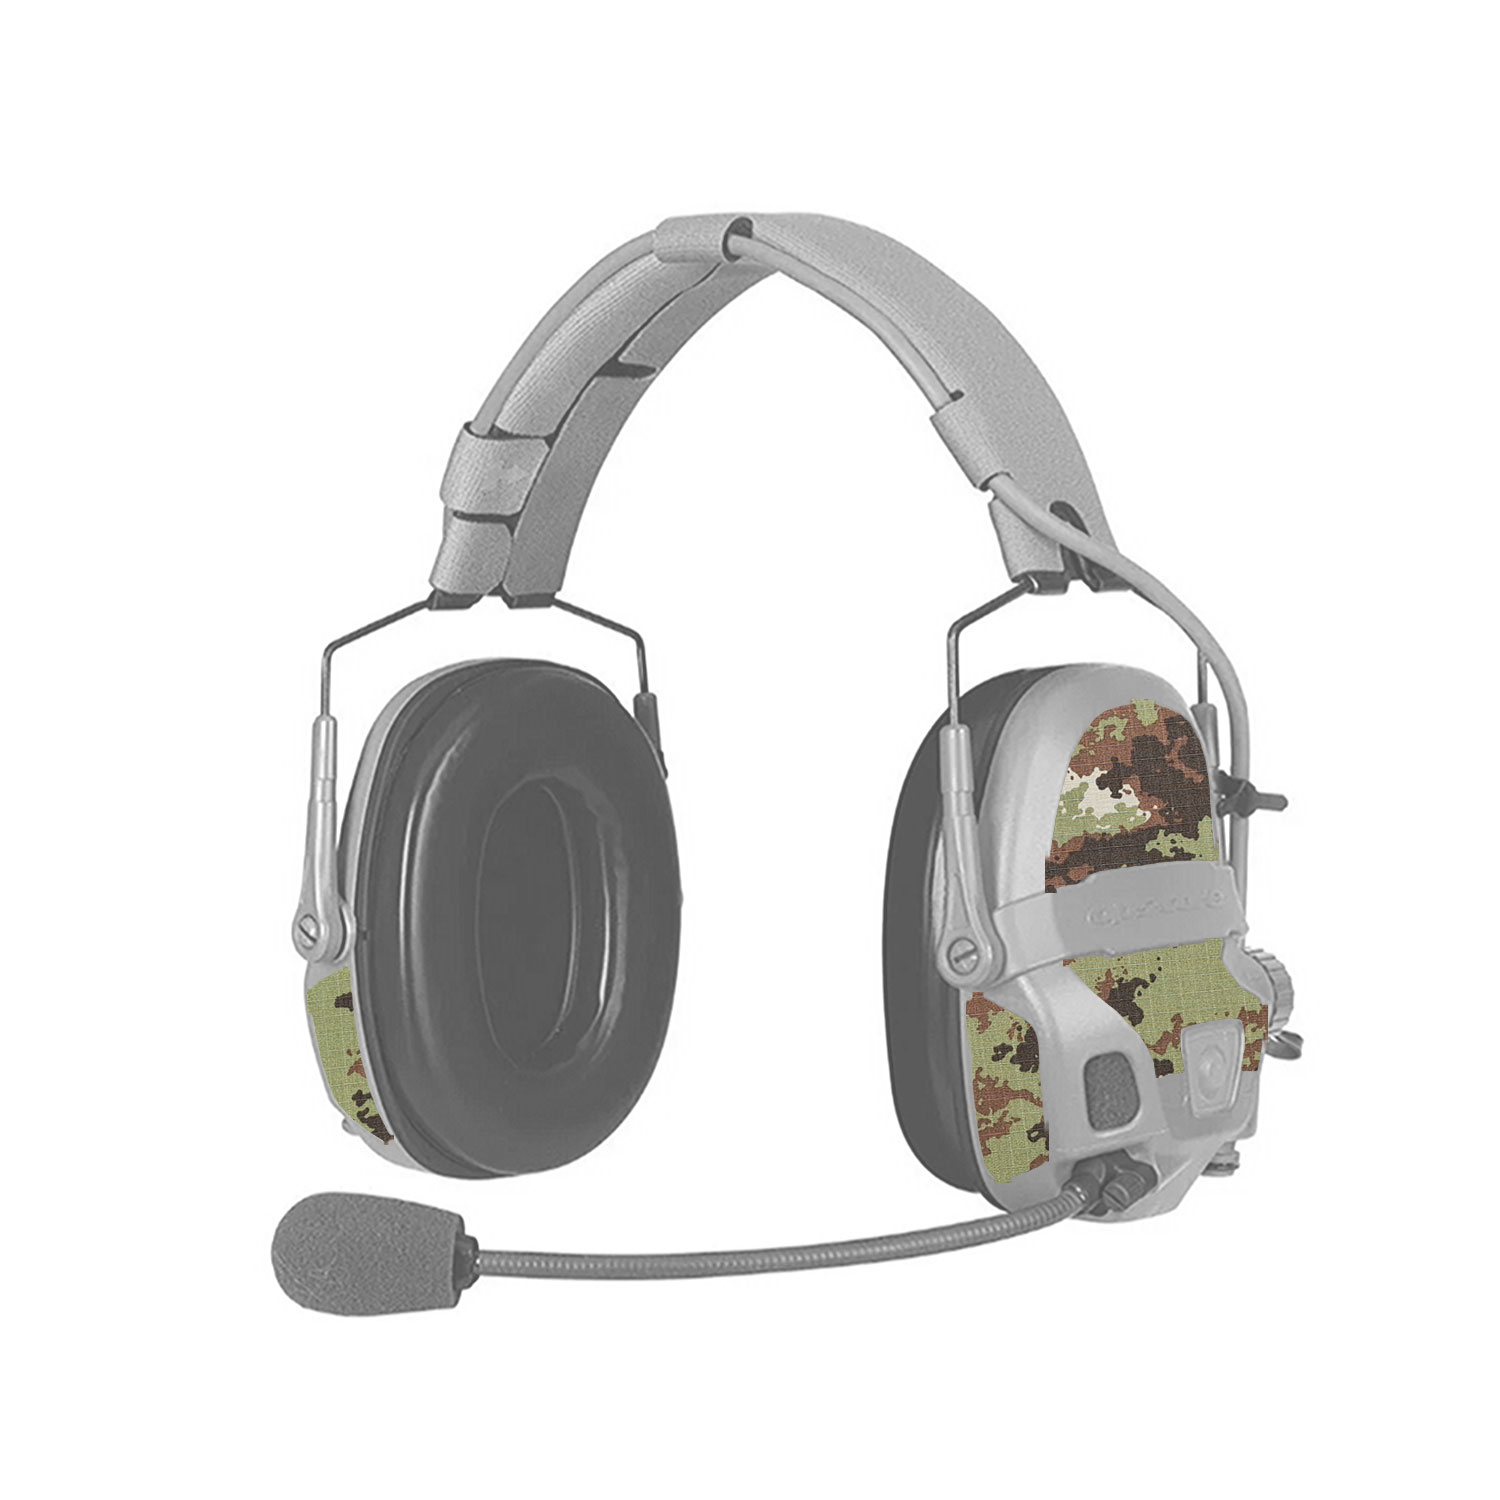 amp-headset-mimetico-vegetato-2